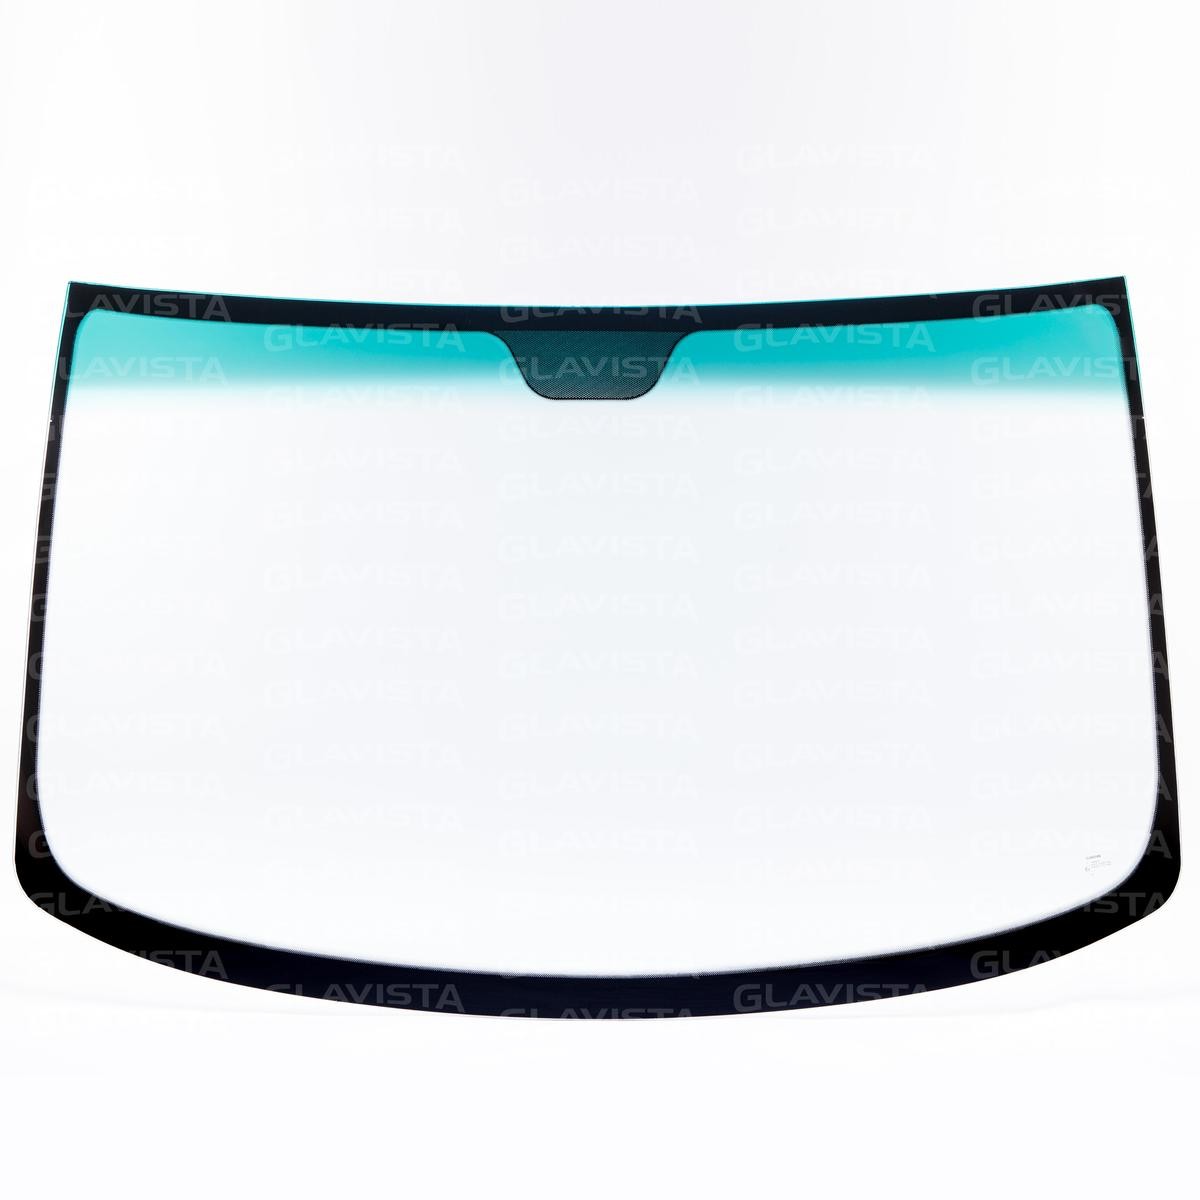 GLAVISTA Windscreen glass WS5428GG suitable for MERCEDES-BENZ V-Class, VITO